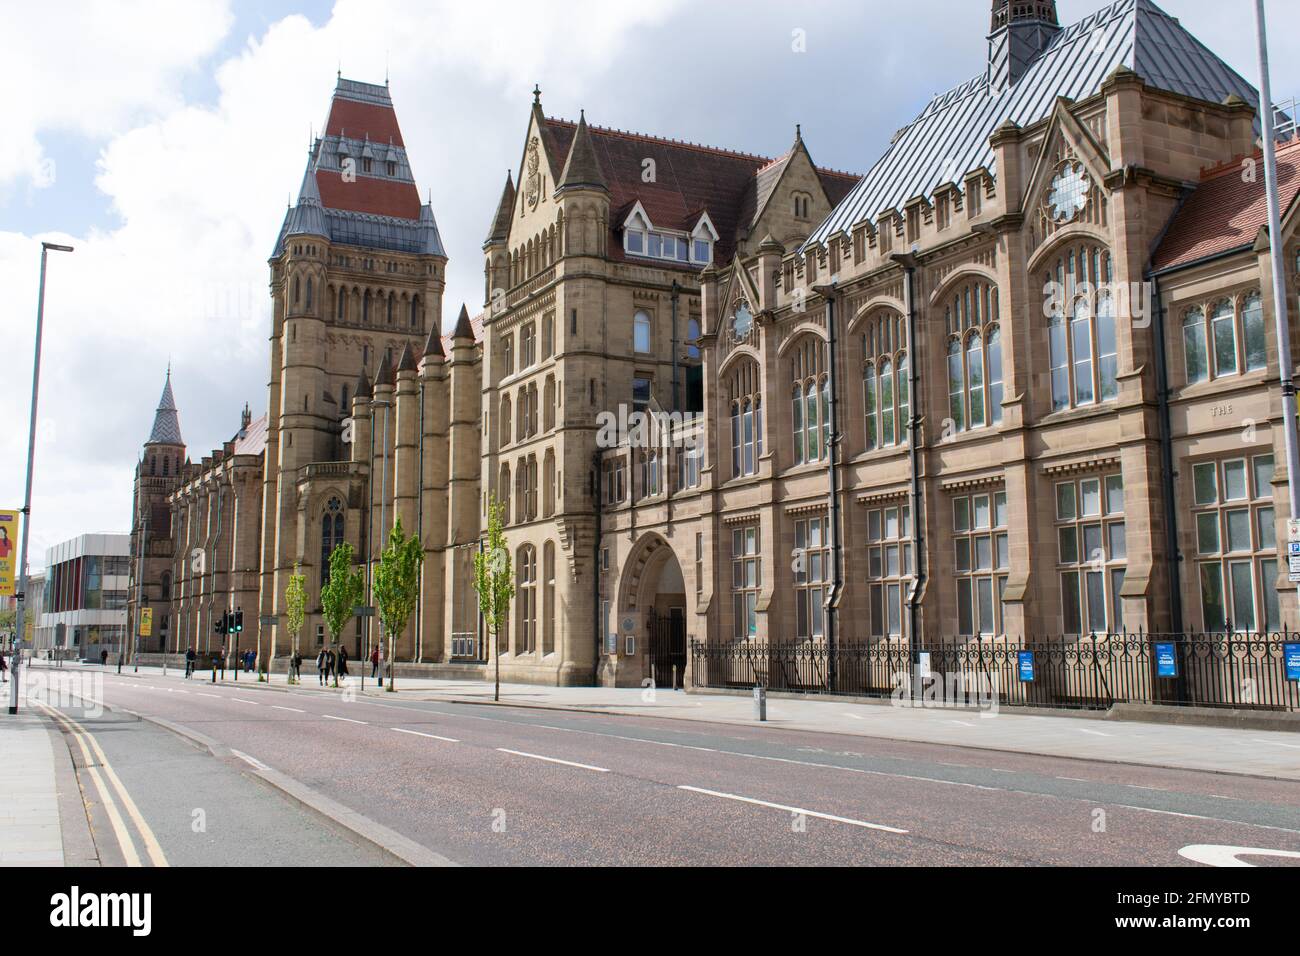 Université de Manchester sur la route d'Oxford sans circulation. Bâtiment de renaissance gothique comprenant le musée de Manchester. ROYAUME-UNI Banque D'Images